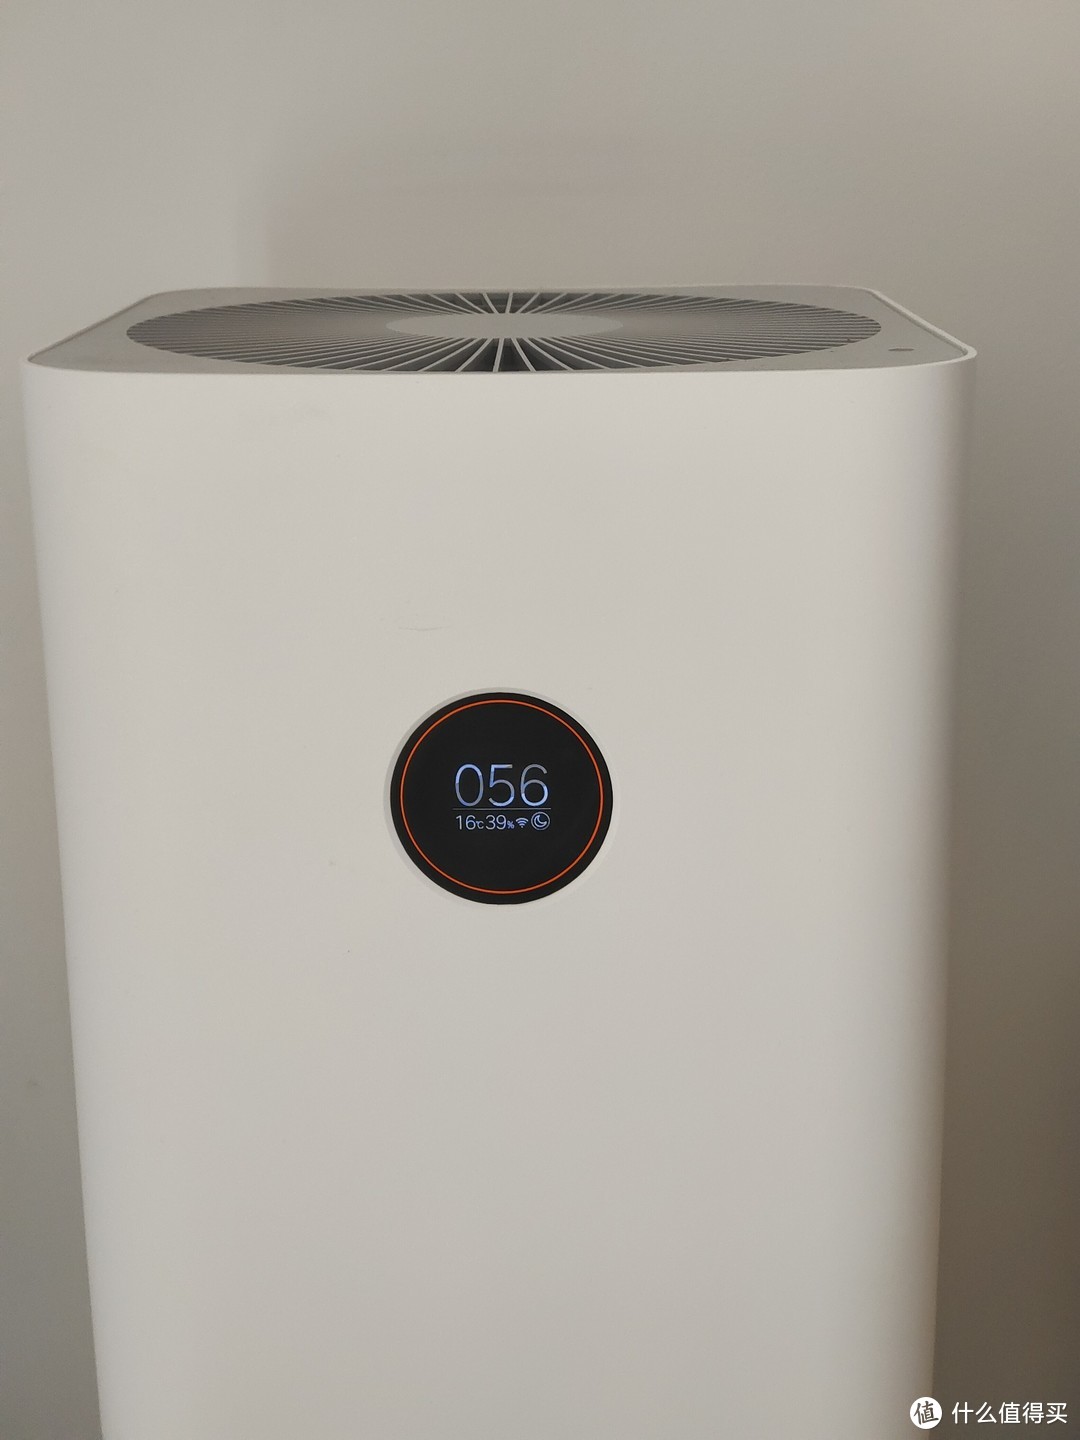 小米米家空气净化器4 Pro适合每个搬新家的人使用。